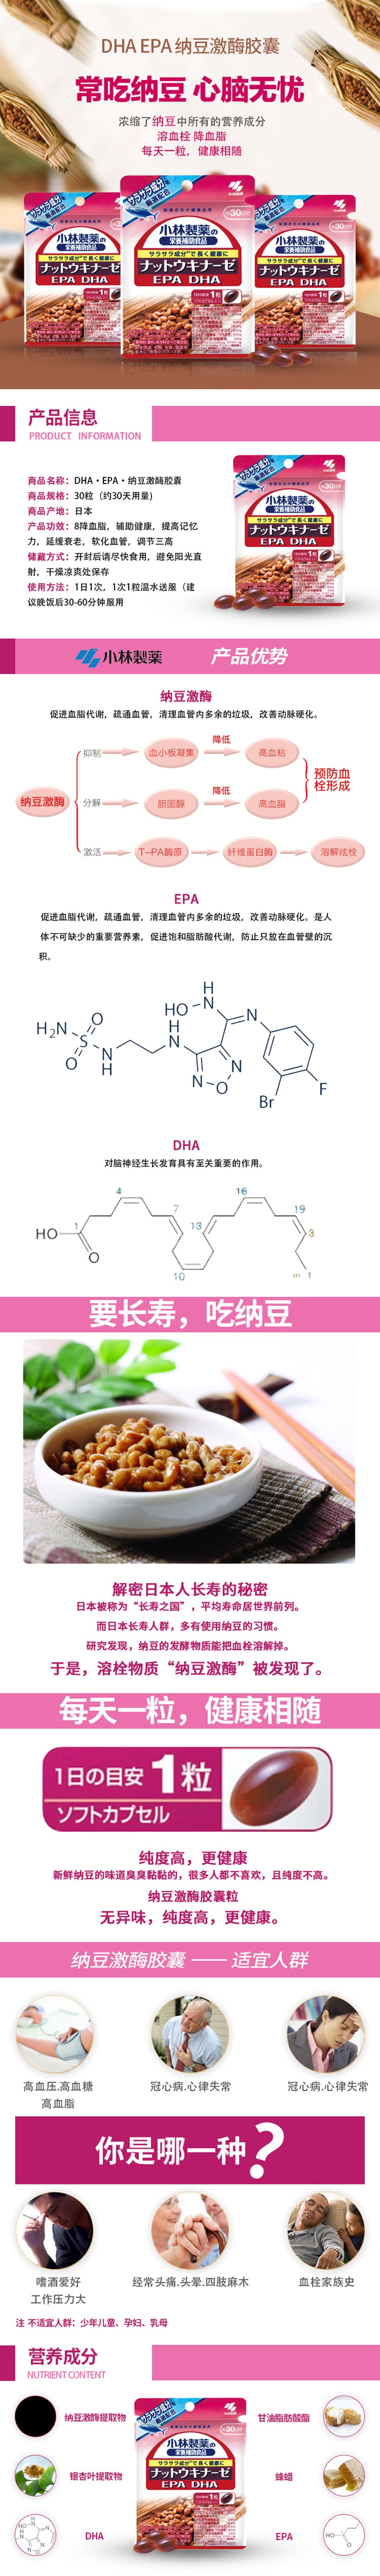 【日本直邮 】小林制药 纳豆激酶+DHA EPA 30粒30日 3袋深入改善装